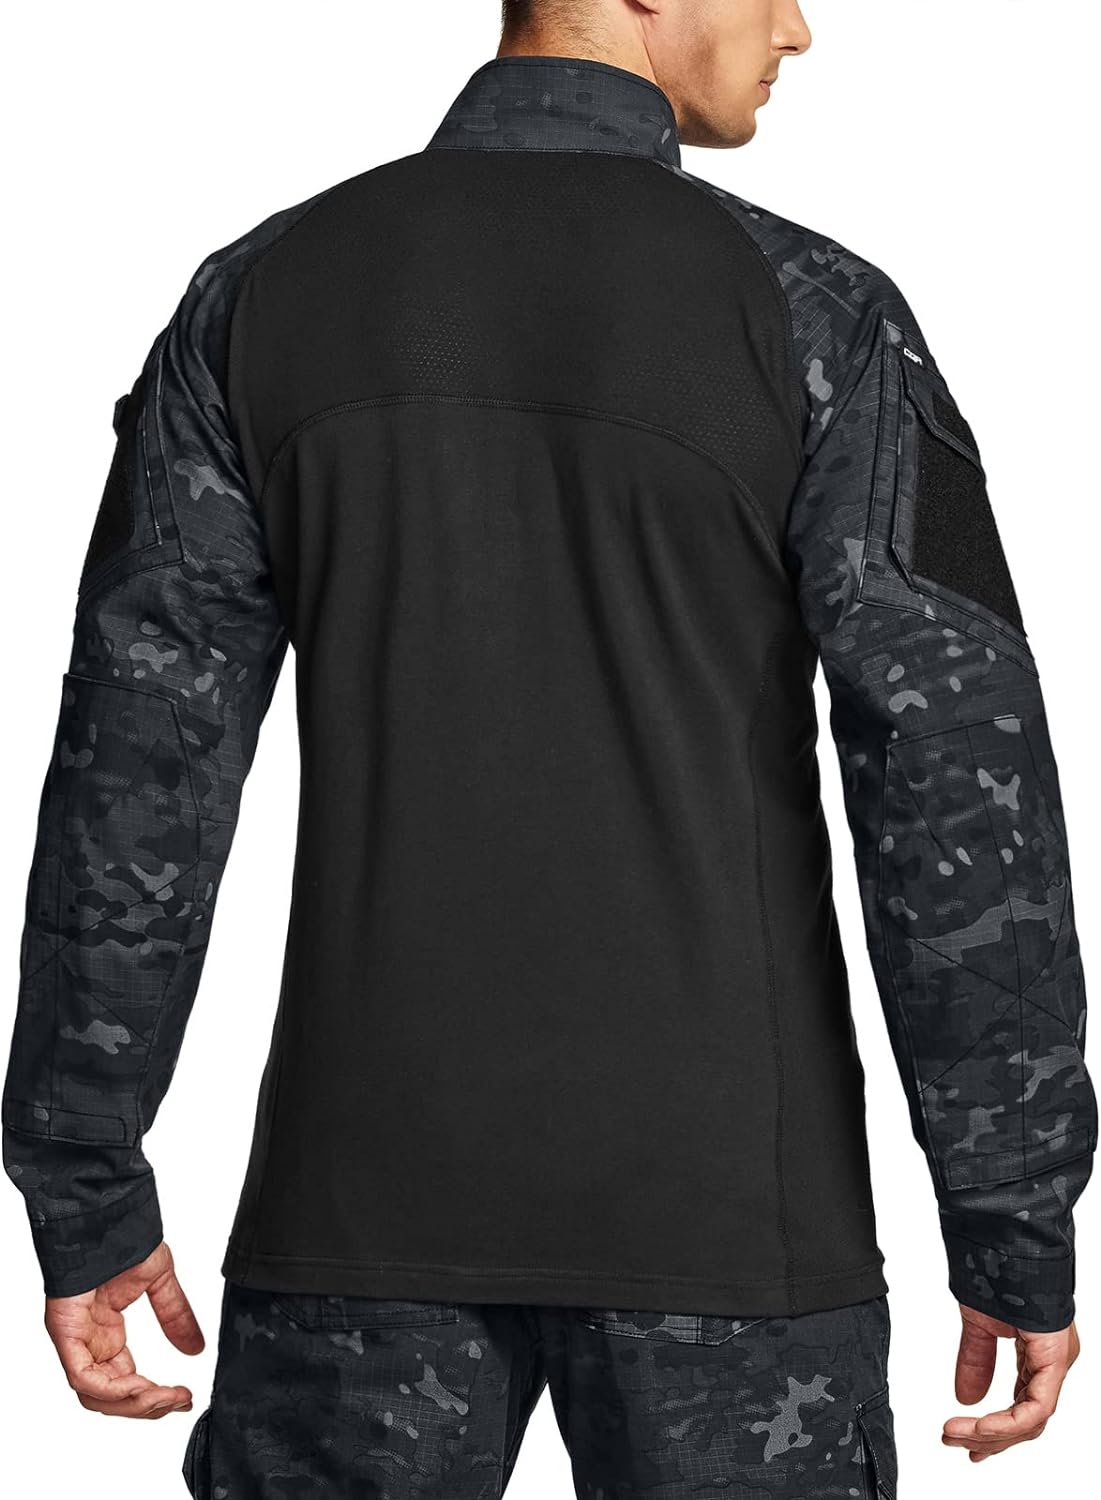 CQR Men’s Combat Shirt Tactical 1/4 Zip Long Sleeve Military BDU Shirts ...